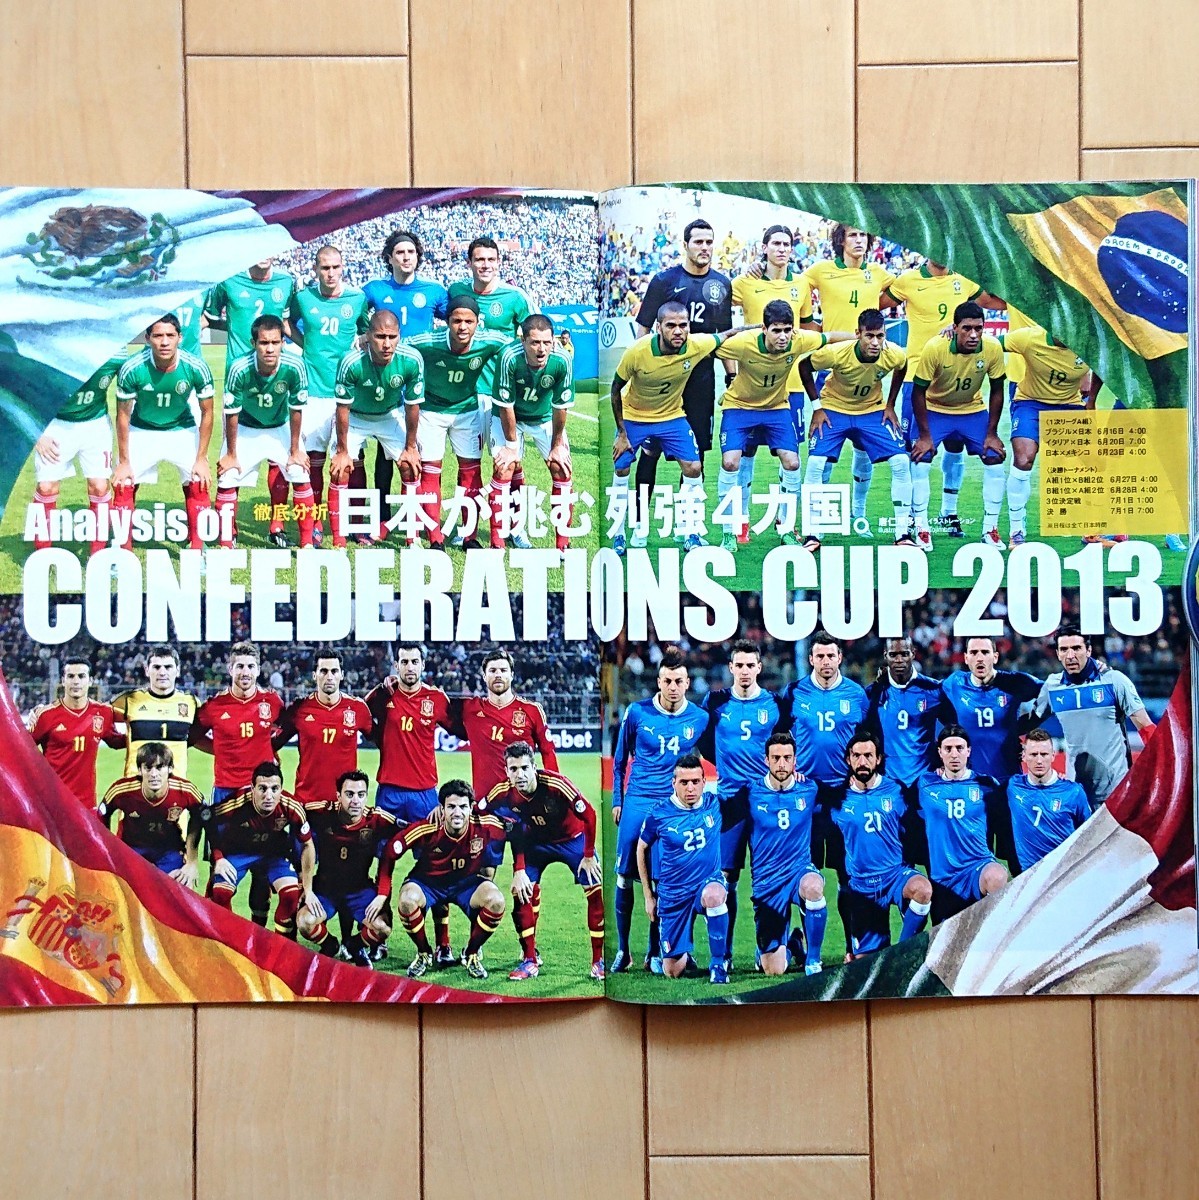 Sports Graphic Number 830号「2014W杯出場決定&コンフェデ総力特集 さあ、ブラジルだ。」第2特集:さよなら、ベッカム 2013年6月27日発売_画像9